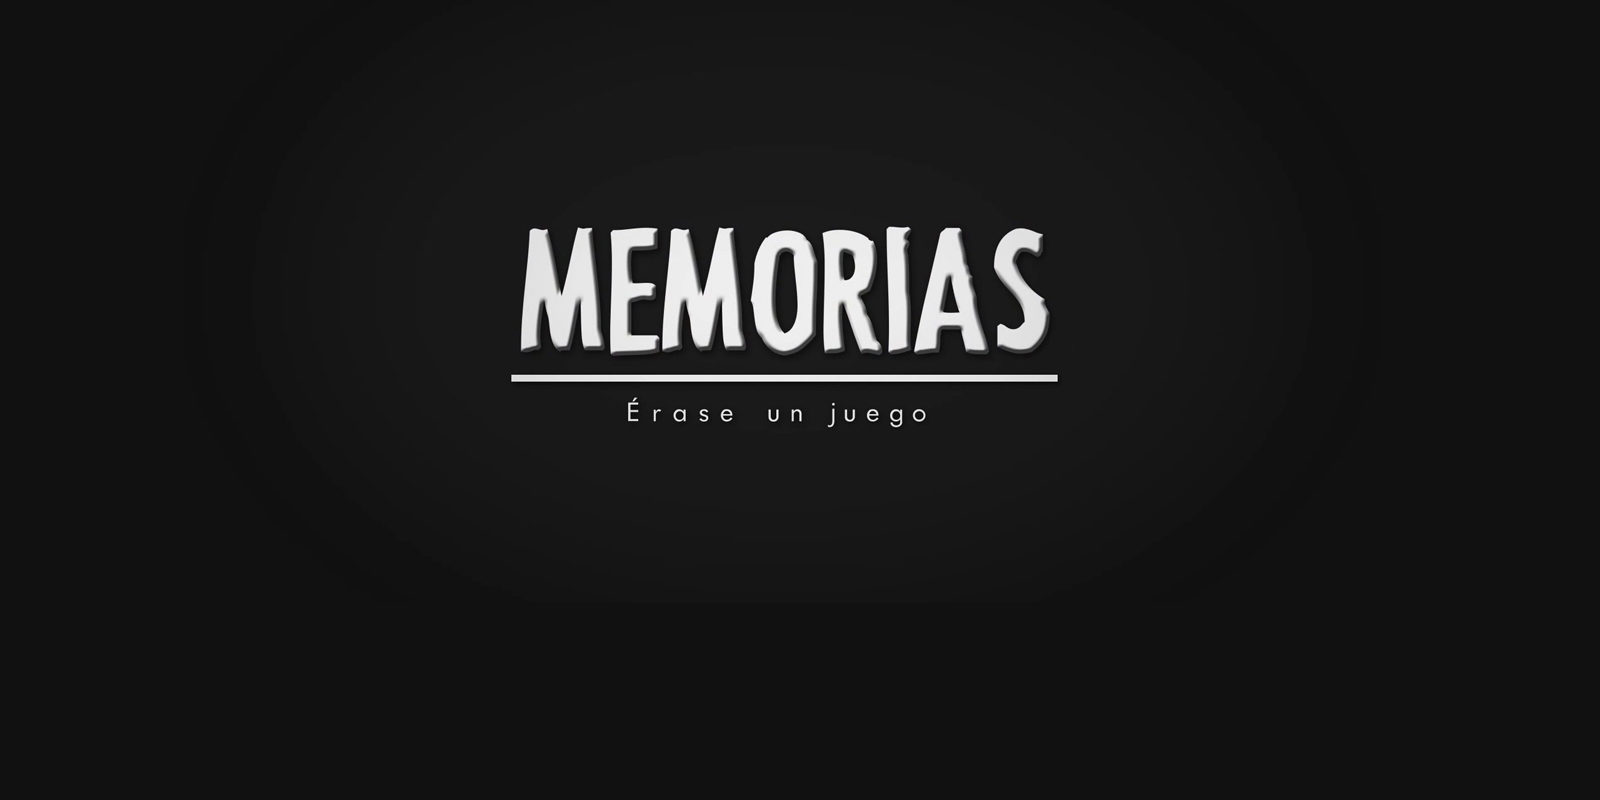 El documental español 'Memorias: érase un juego' se estrena hoy en JoyNetTV